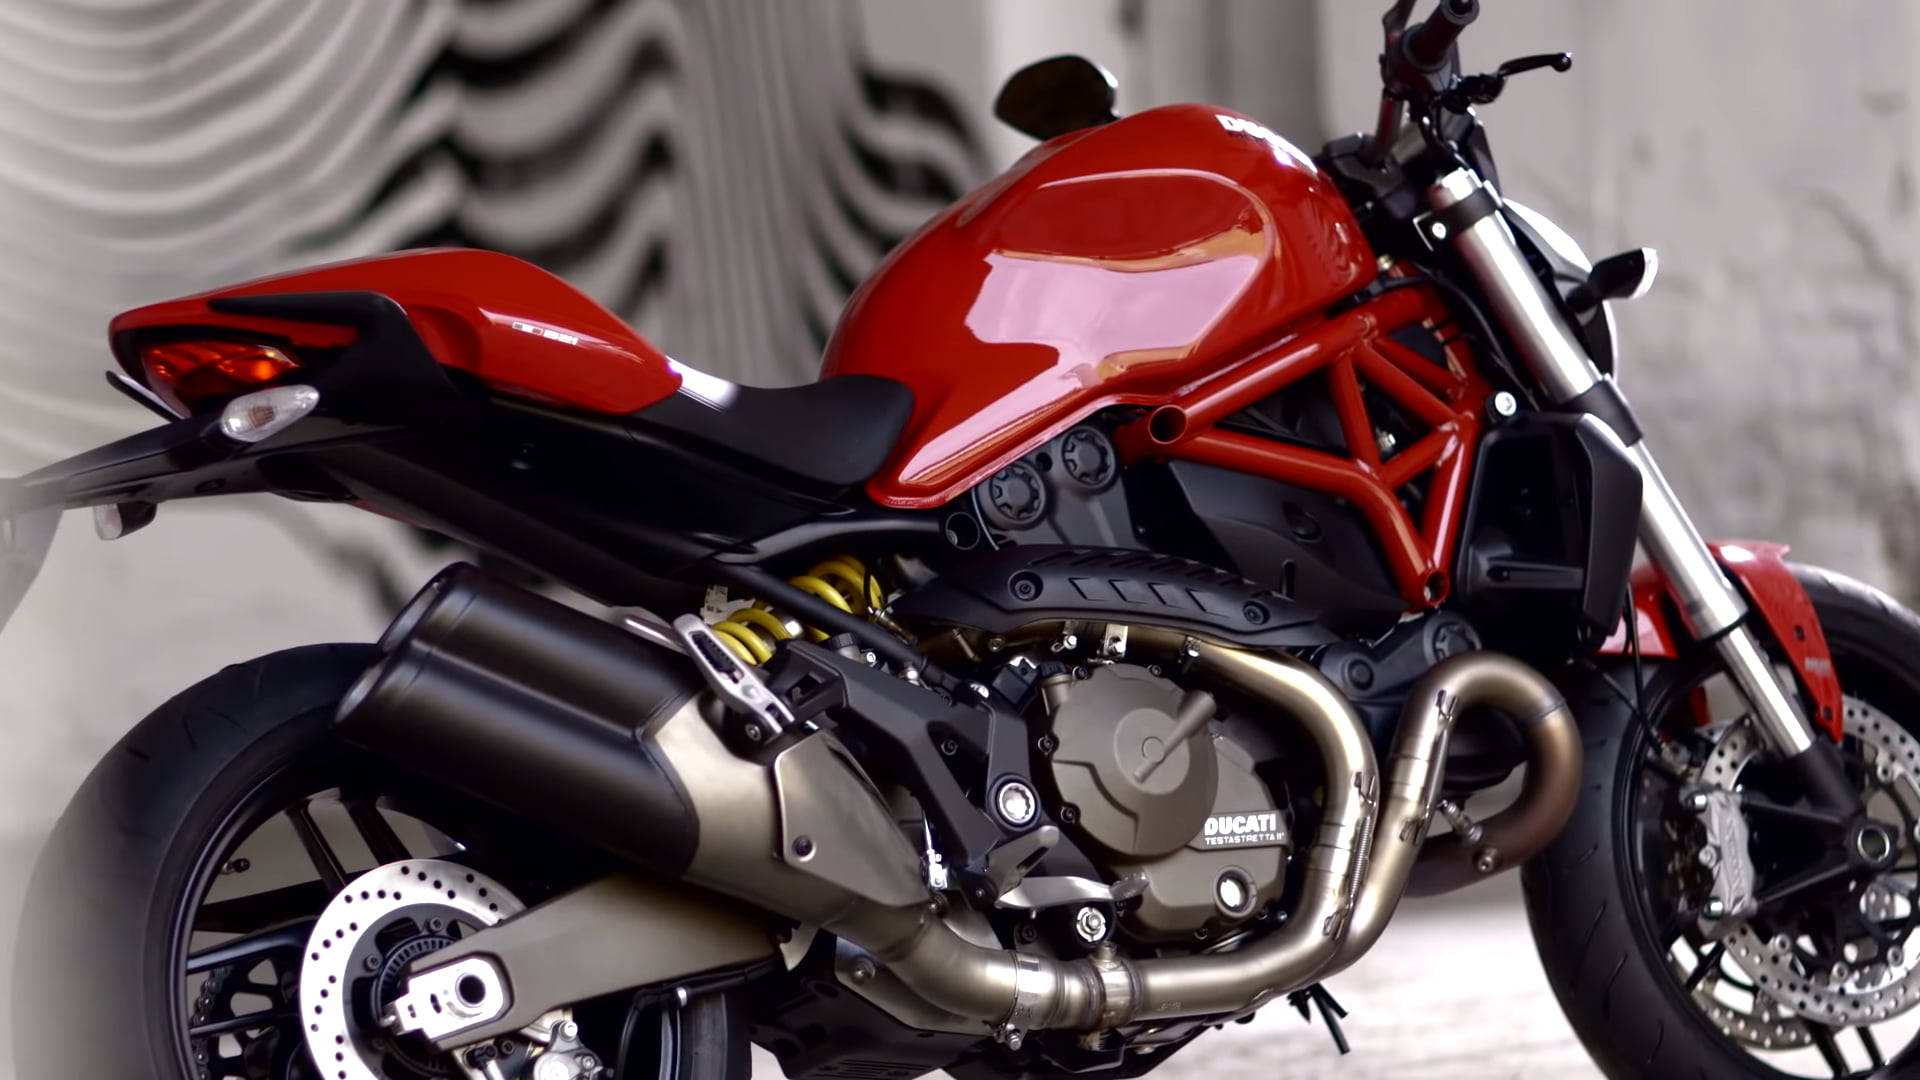 Ducati Monster 1200 - A High Killer Performance.